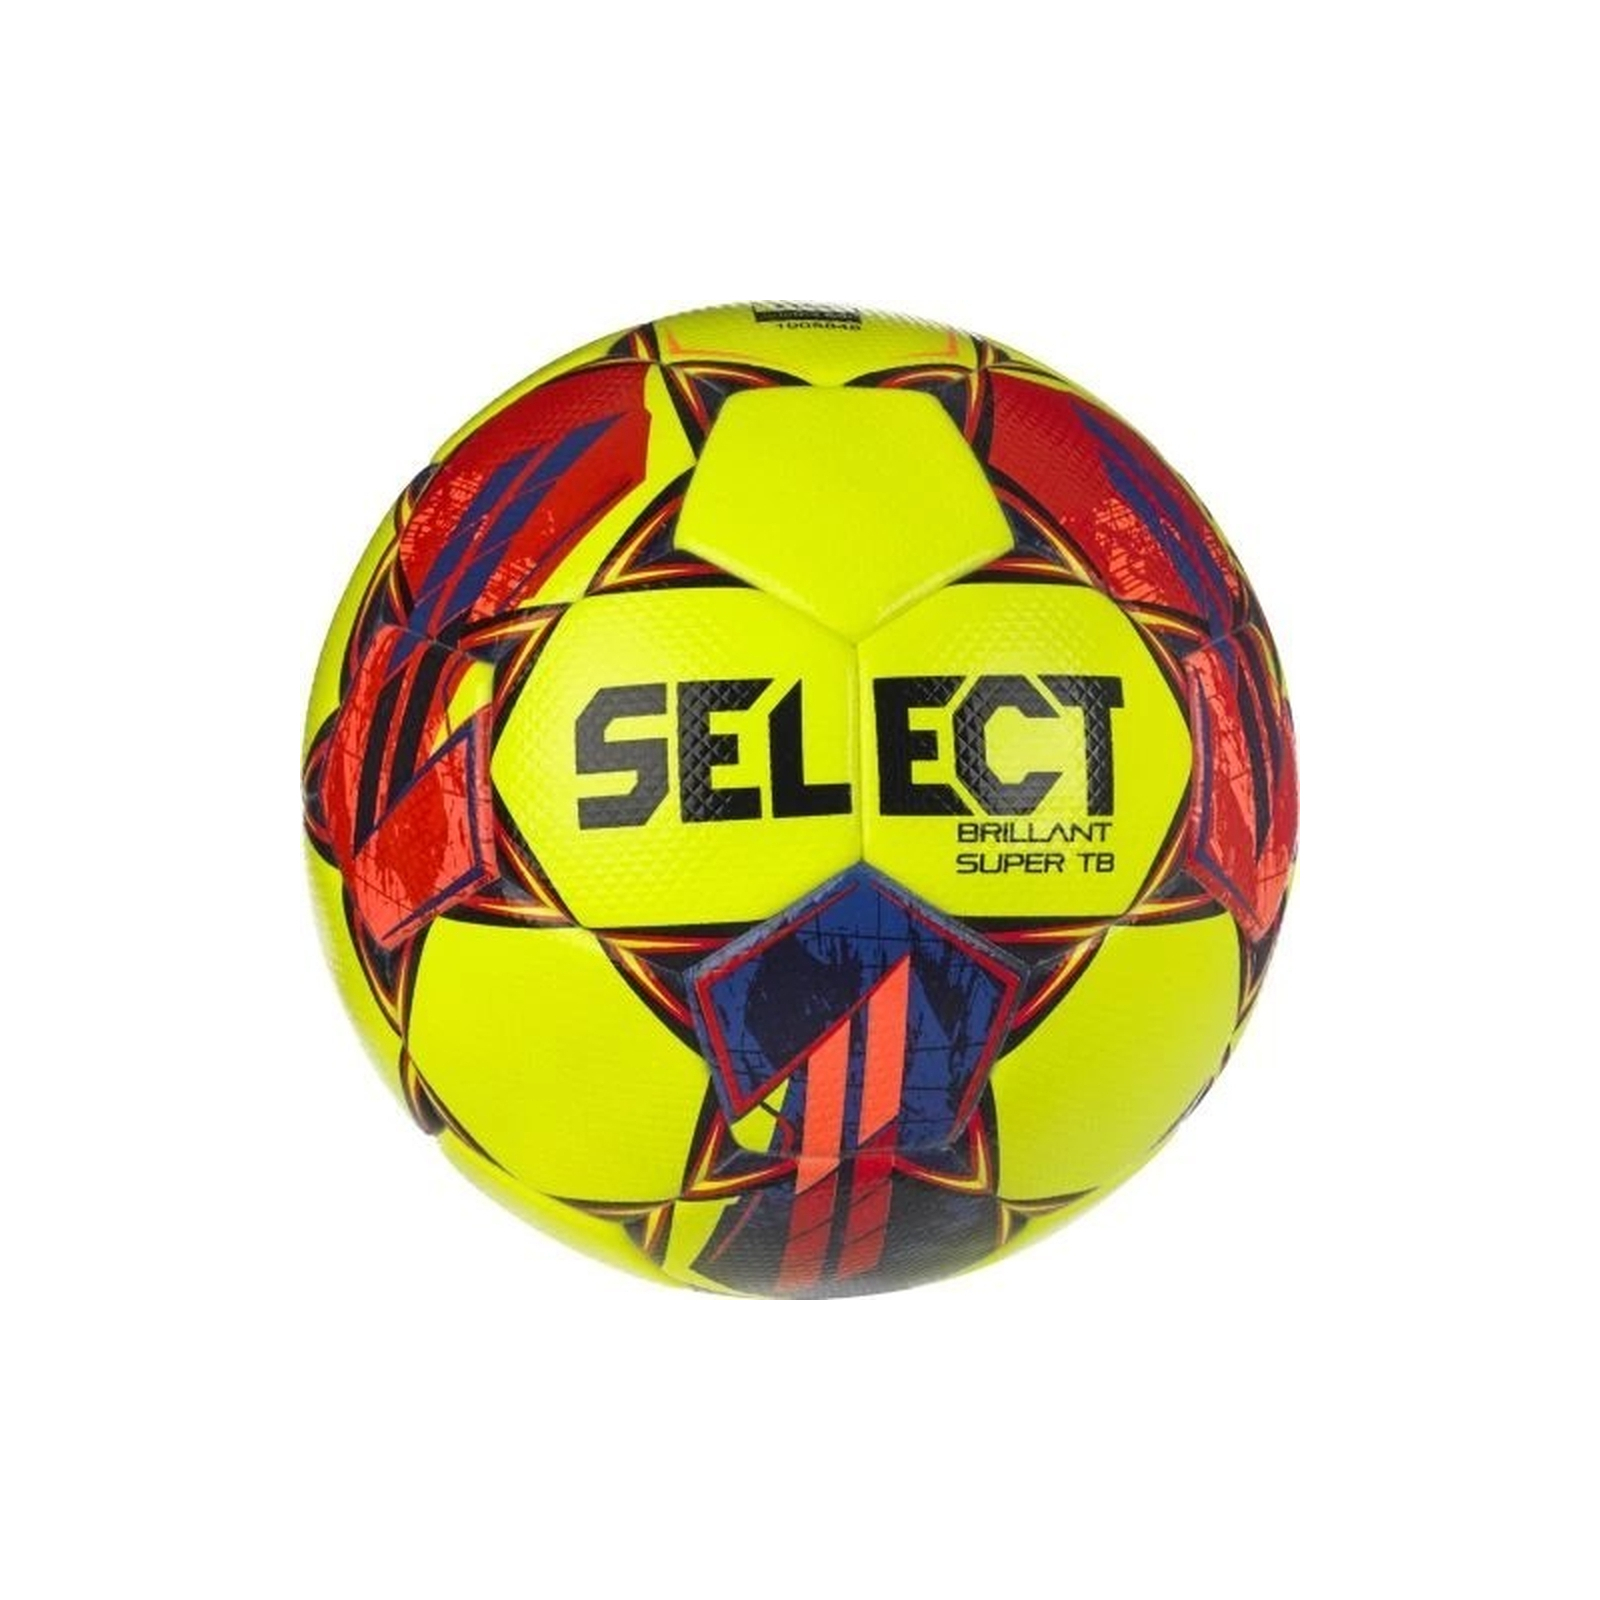 М'яч футбольний Select Brillant Super FIFA TB v23 жовтий, червоний Уні 5 (5703543317028)